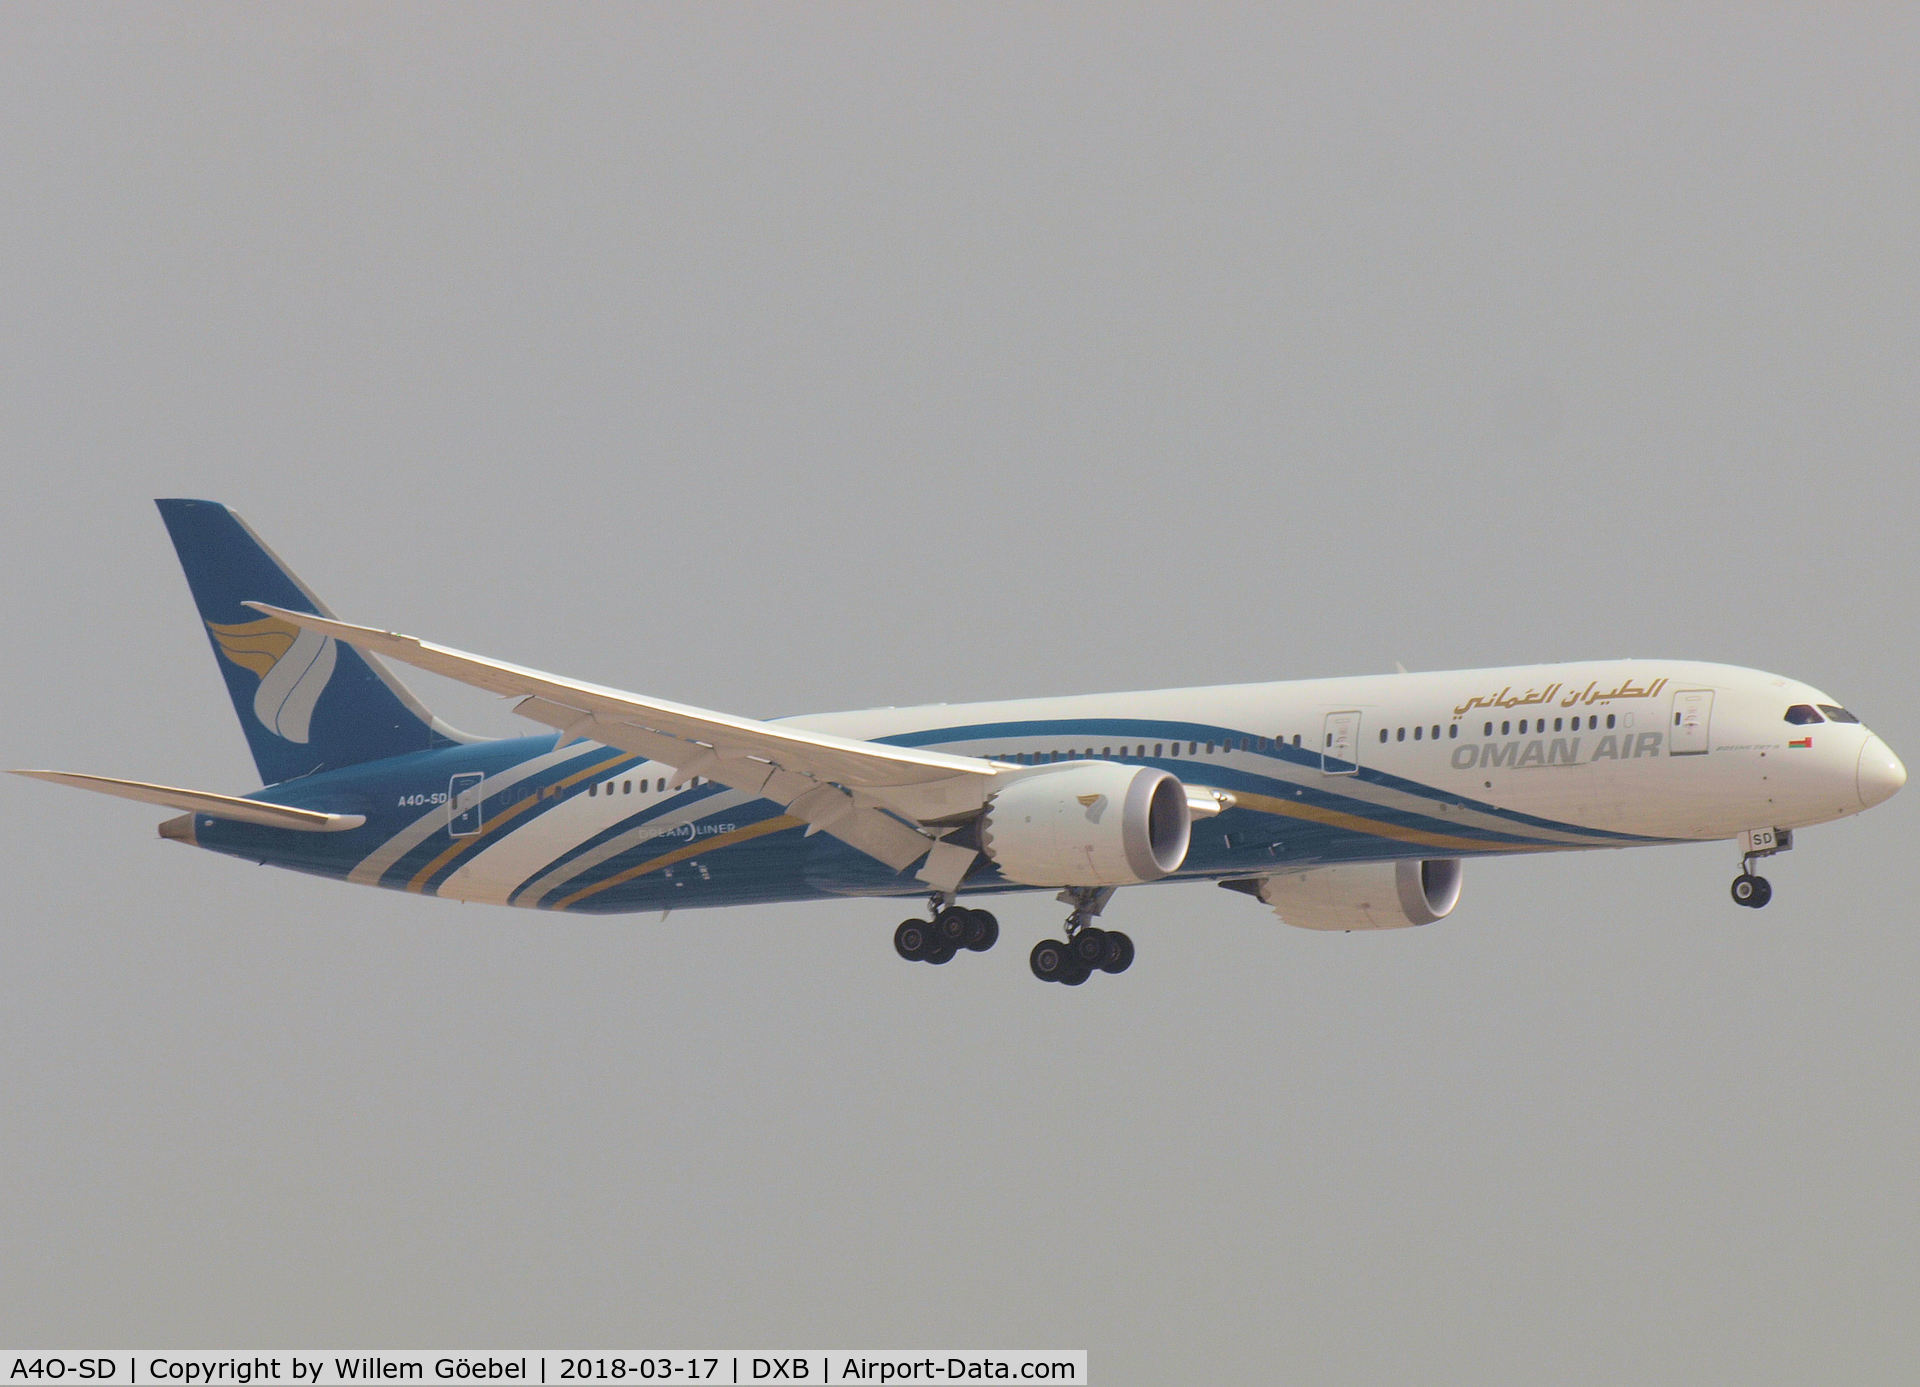 A4O-SD, 2017 Boeing 787-9 Dreamliner Dreamliner C/N 38892, Landing on DUBAI INTERNATIONAL Airport